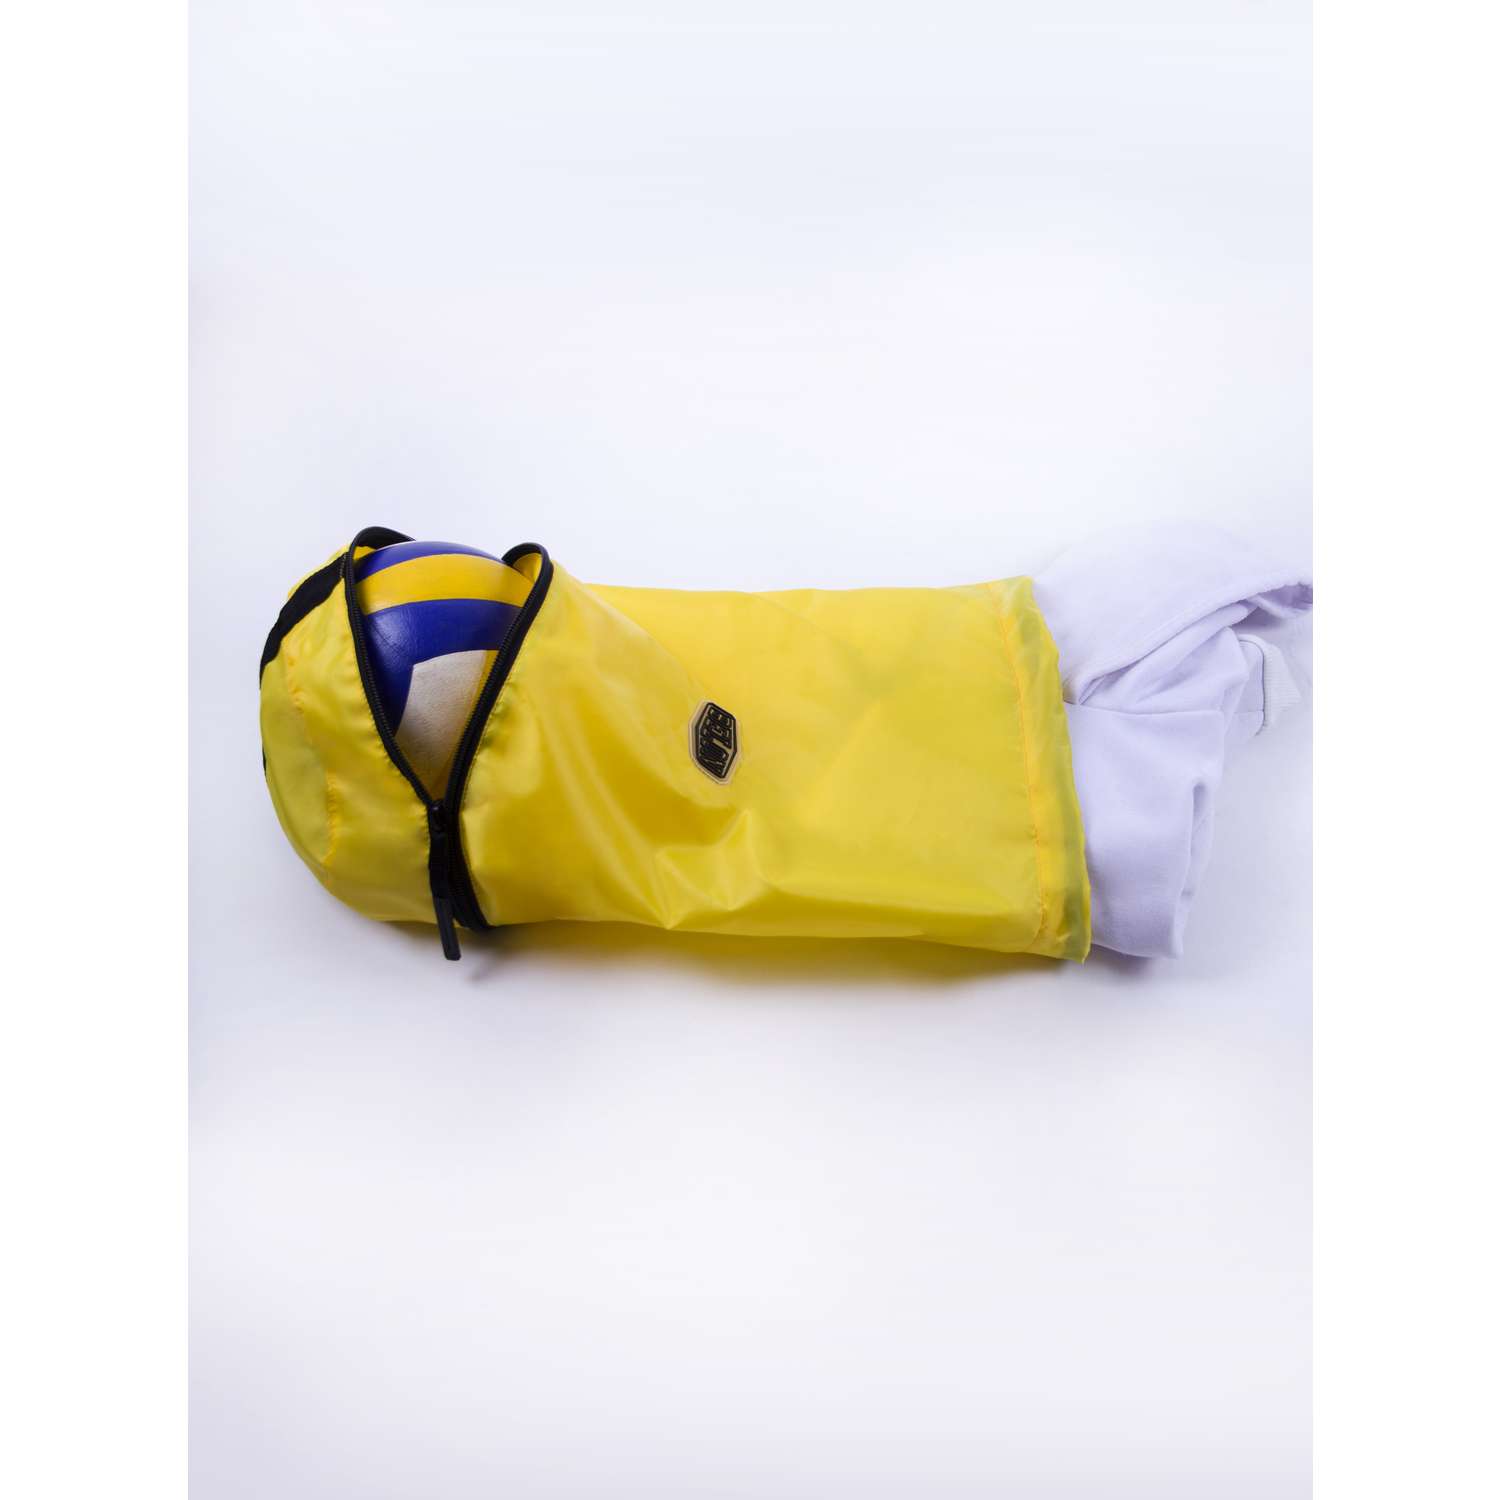 Мешок для сменных вещей Belon familia с отсеком для мяча/ желтый ССМ-002-Ж - фото 1